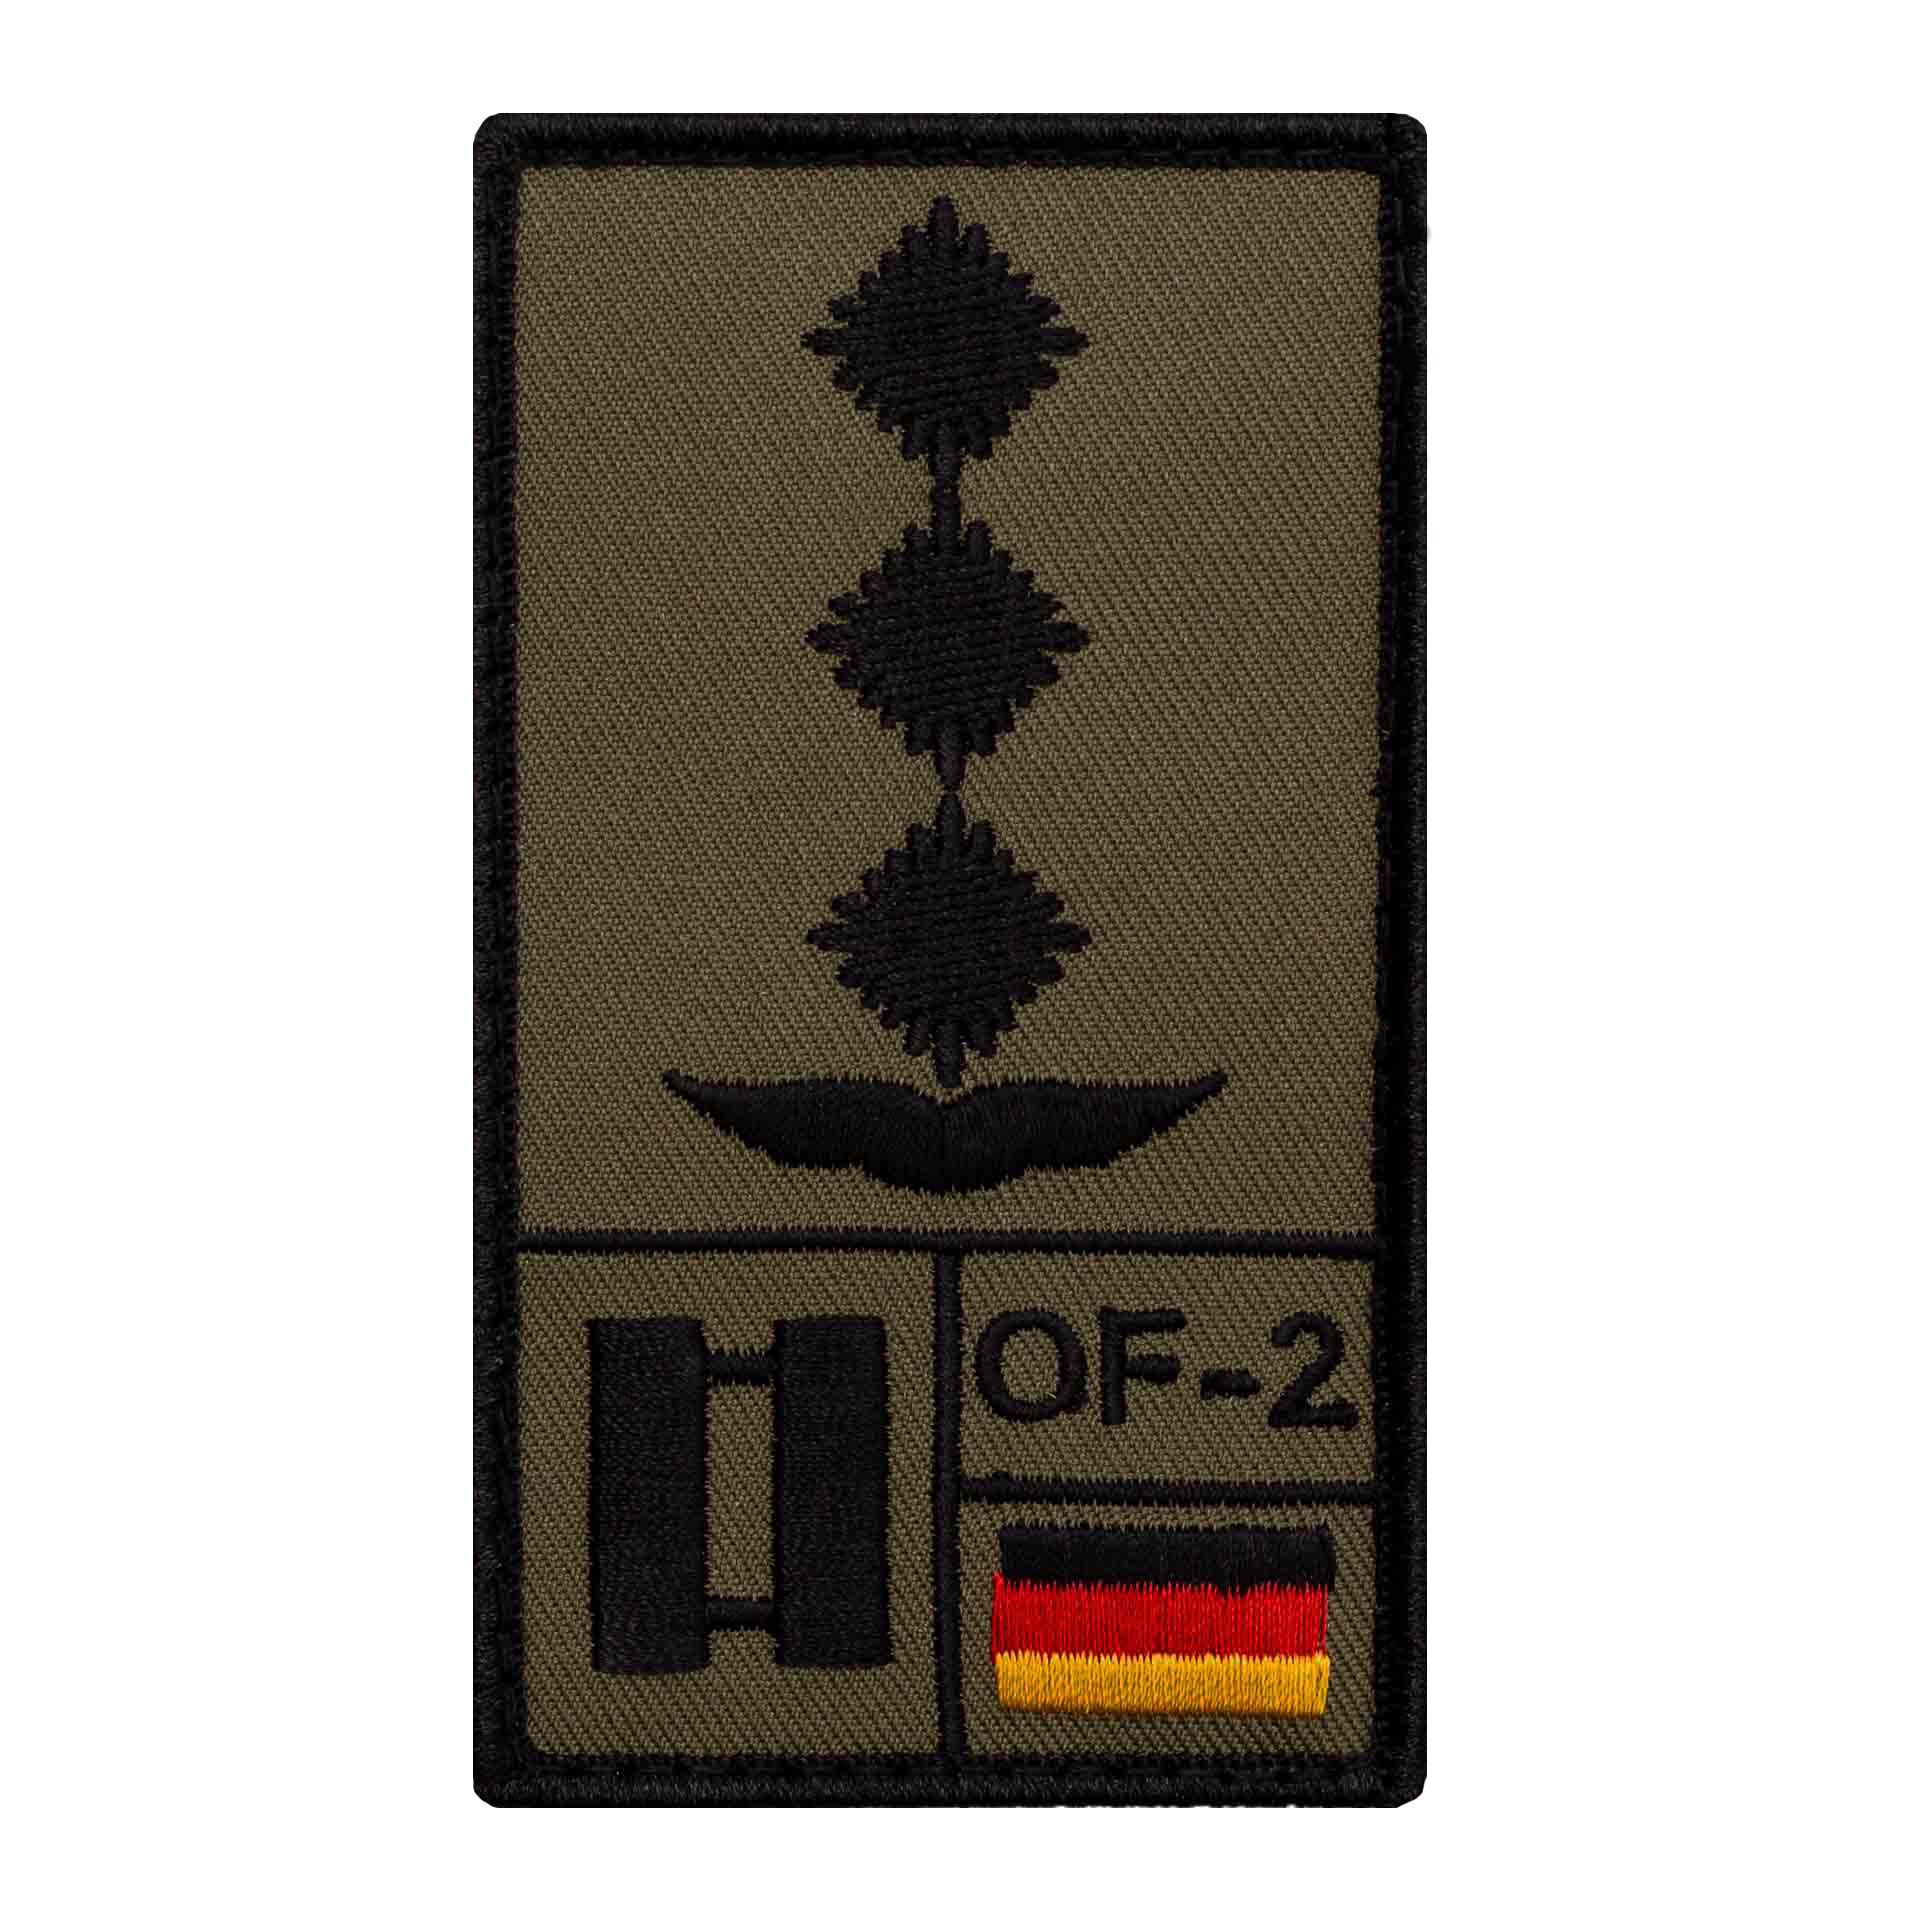 1x KLETT Bundeswehr KFOR Verbandsabzeichen Ärmel Uniform Jacke Abzeichen Patch